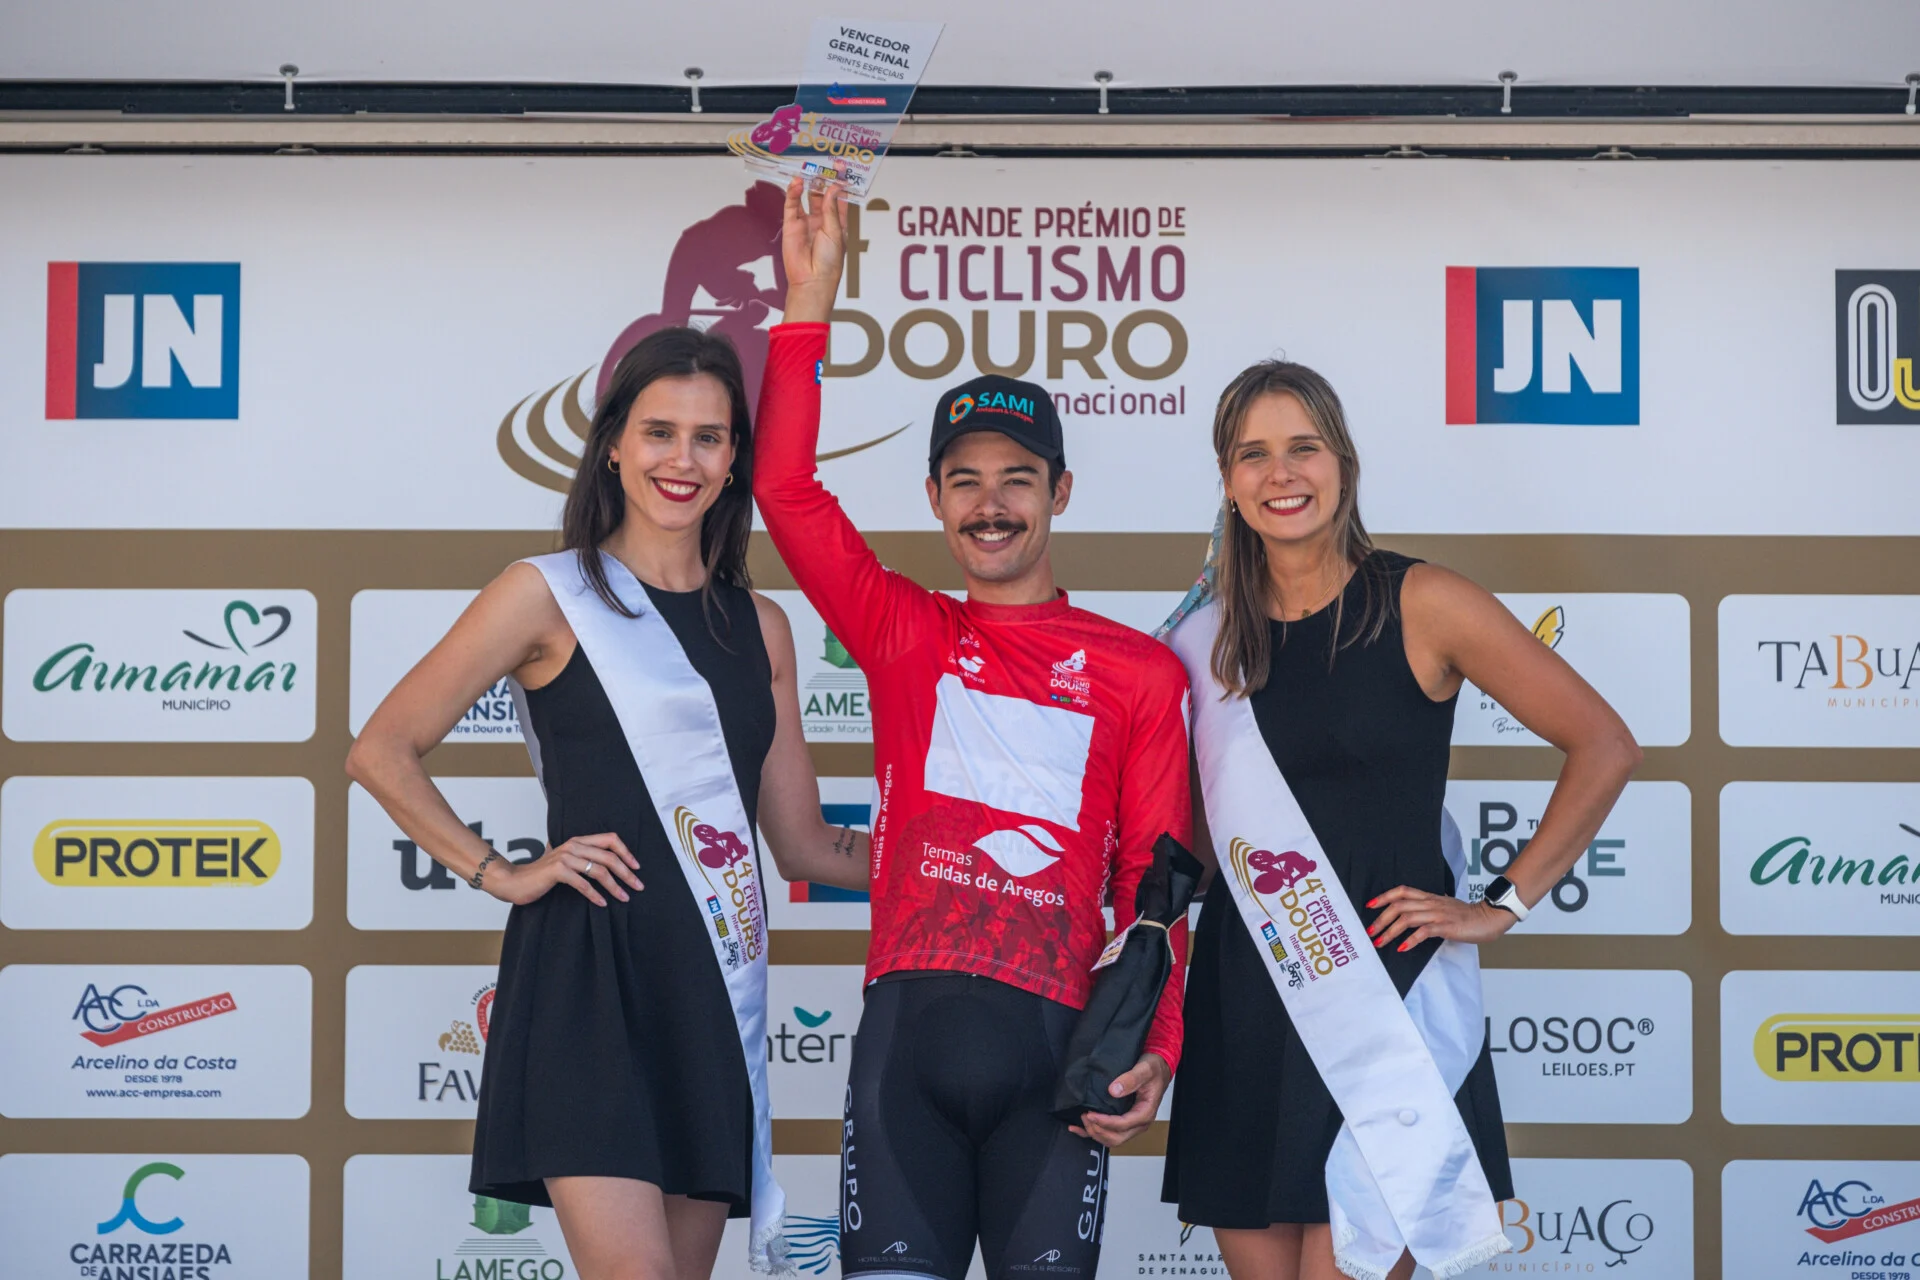 Clube Ciclismo de Tavira - 4ª GP CICLISMO DOURO Internacional - 4etapa -12